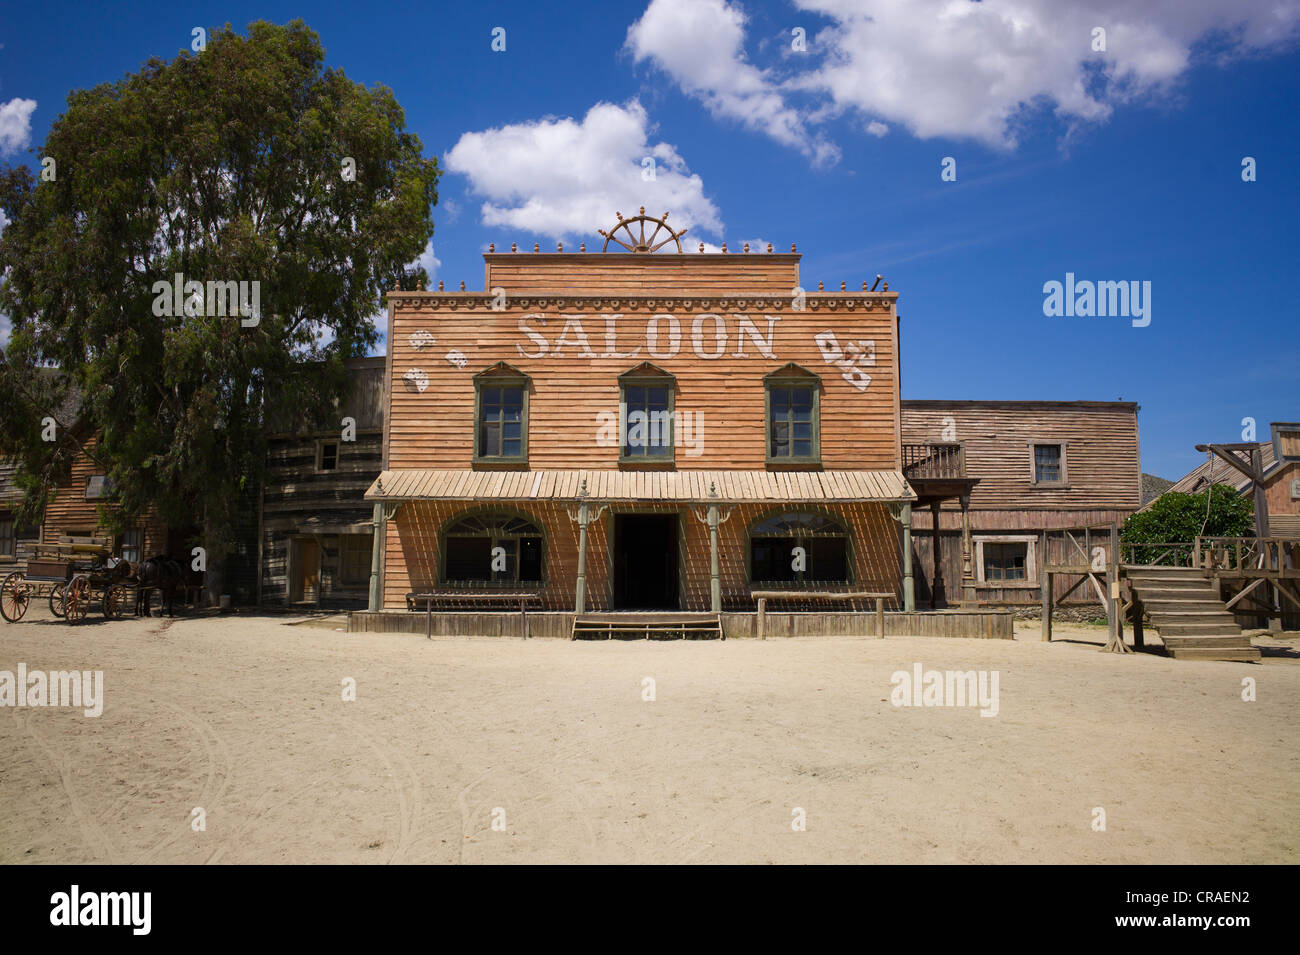 Fort Bravo, ehemalige Film-Set, jetzt eine touristische Attraktion, Westernstadt, Saloon, Tabernas, Andalusien, Spanien, Europa Stockfoto